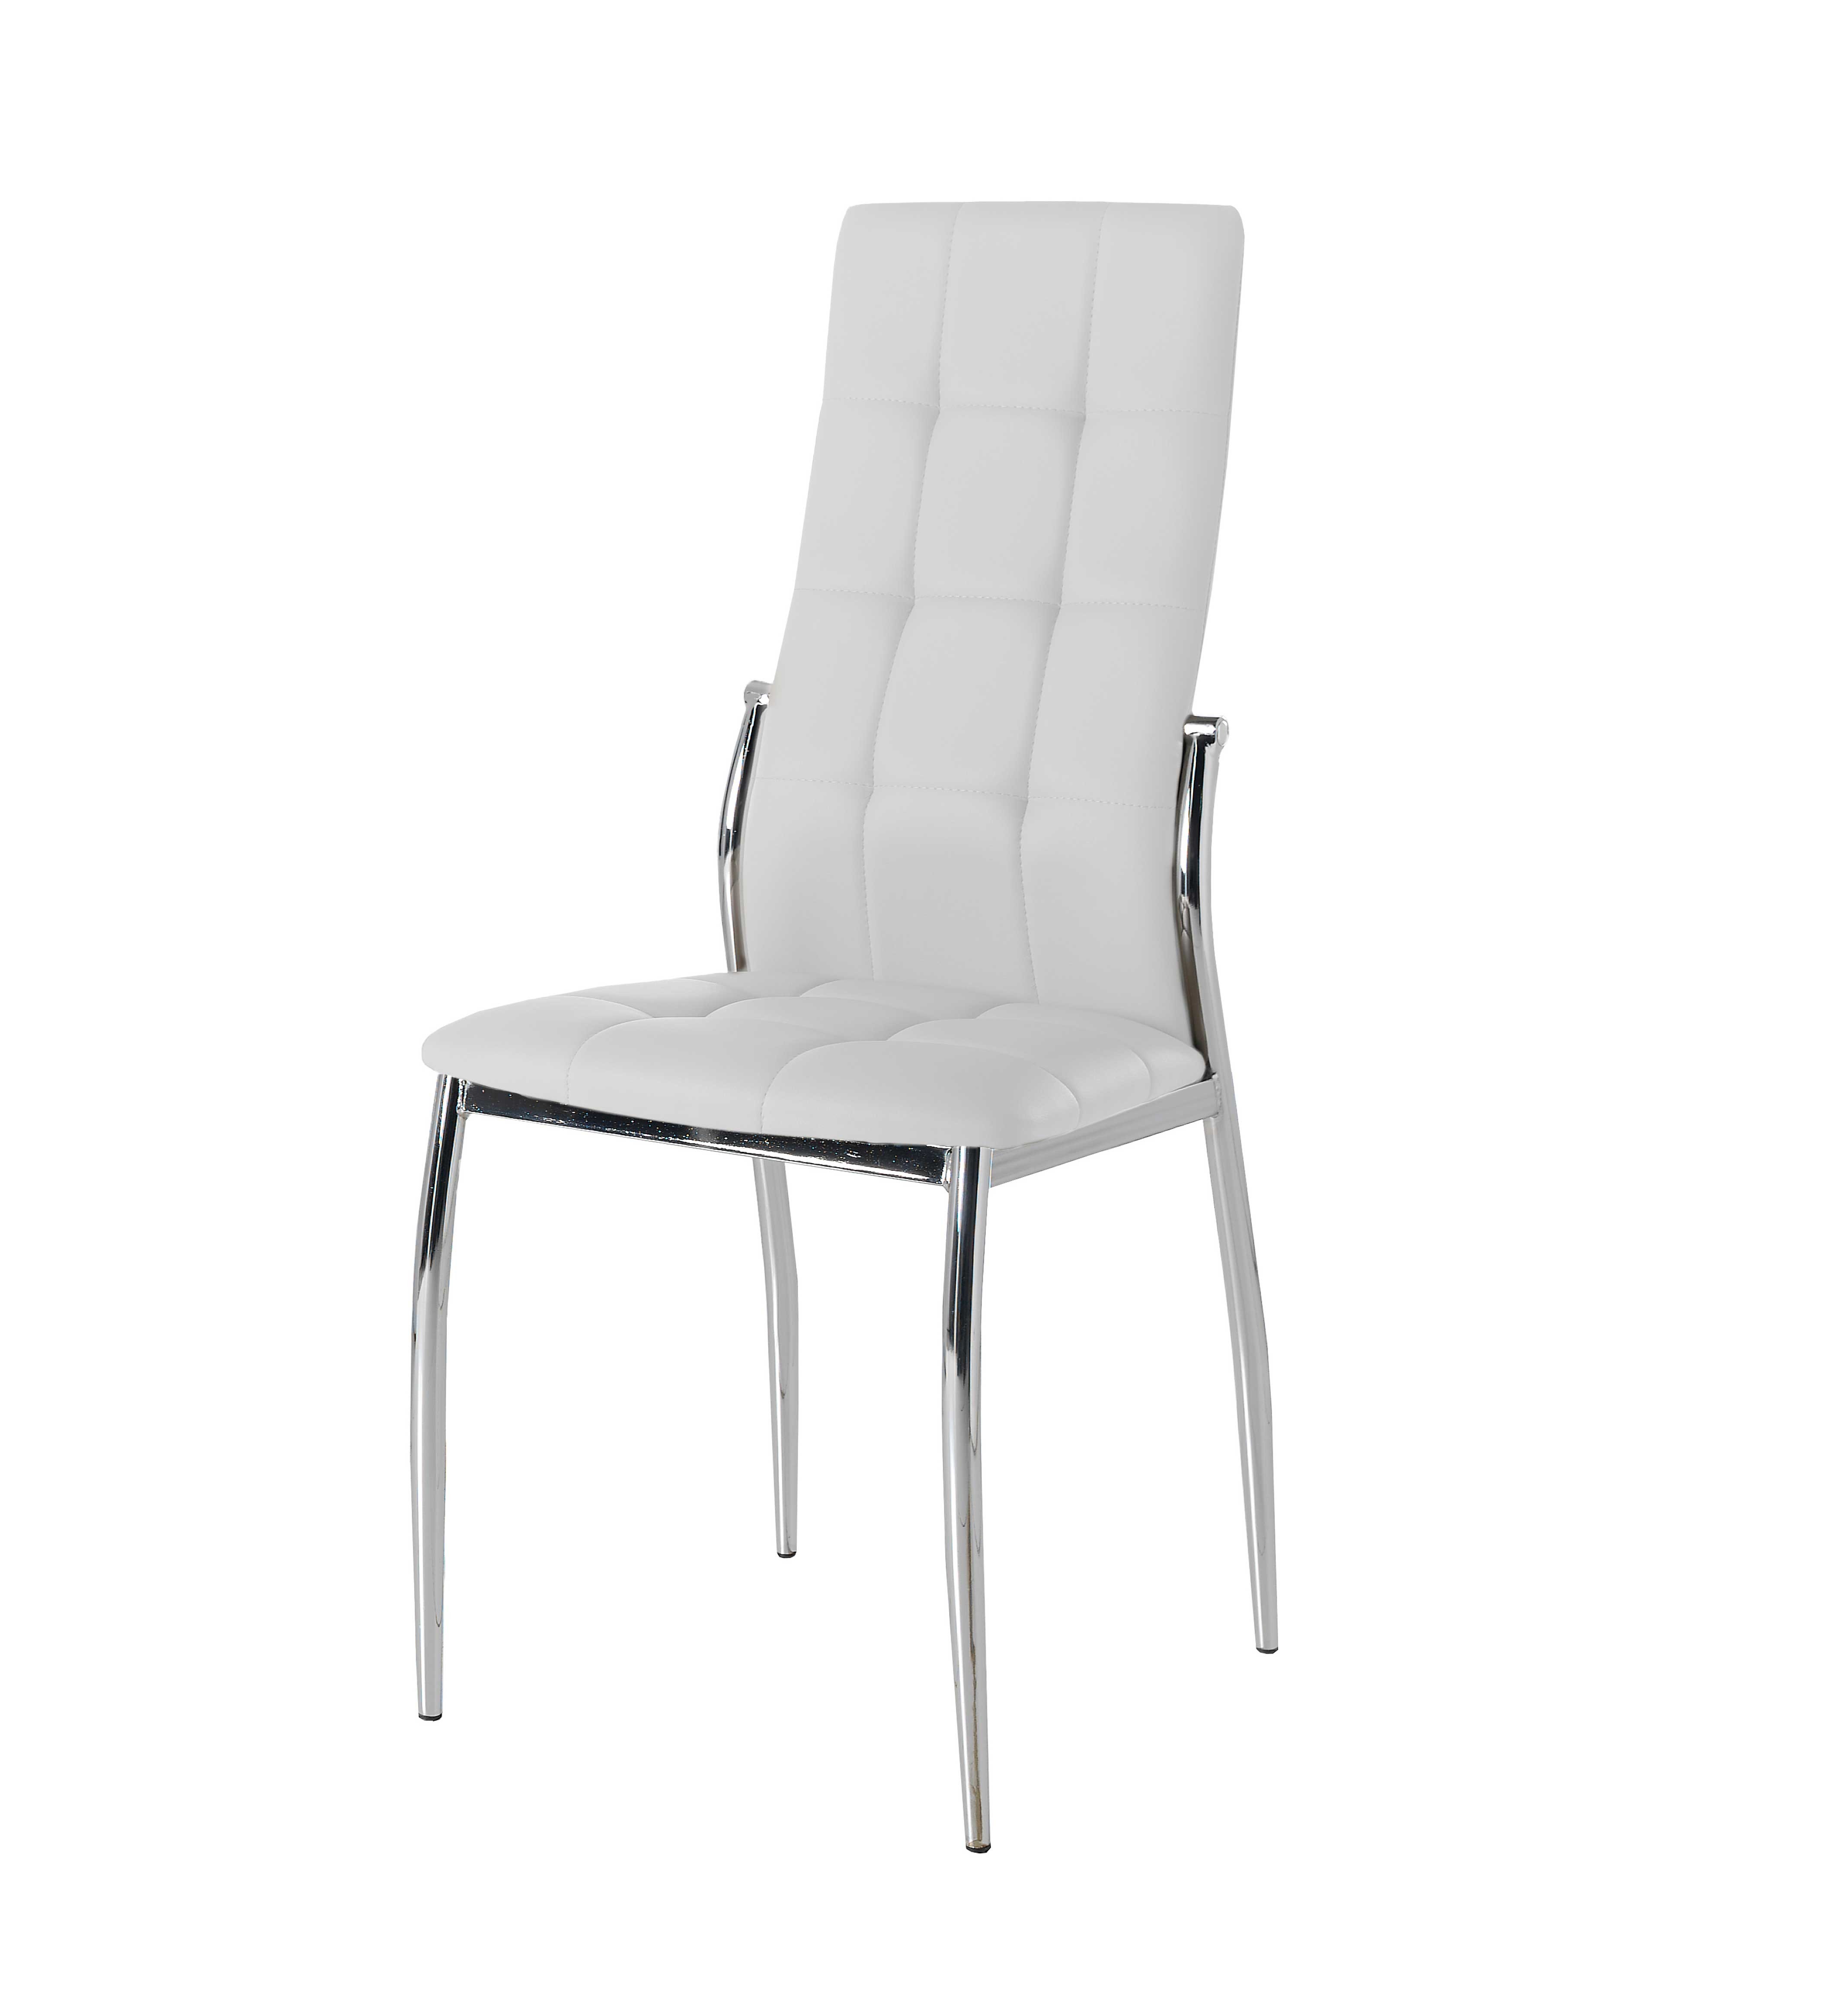 Pack 4 sillas polipiel color blanco mod. Cami